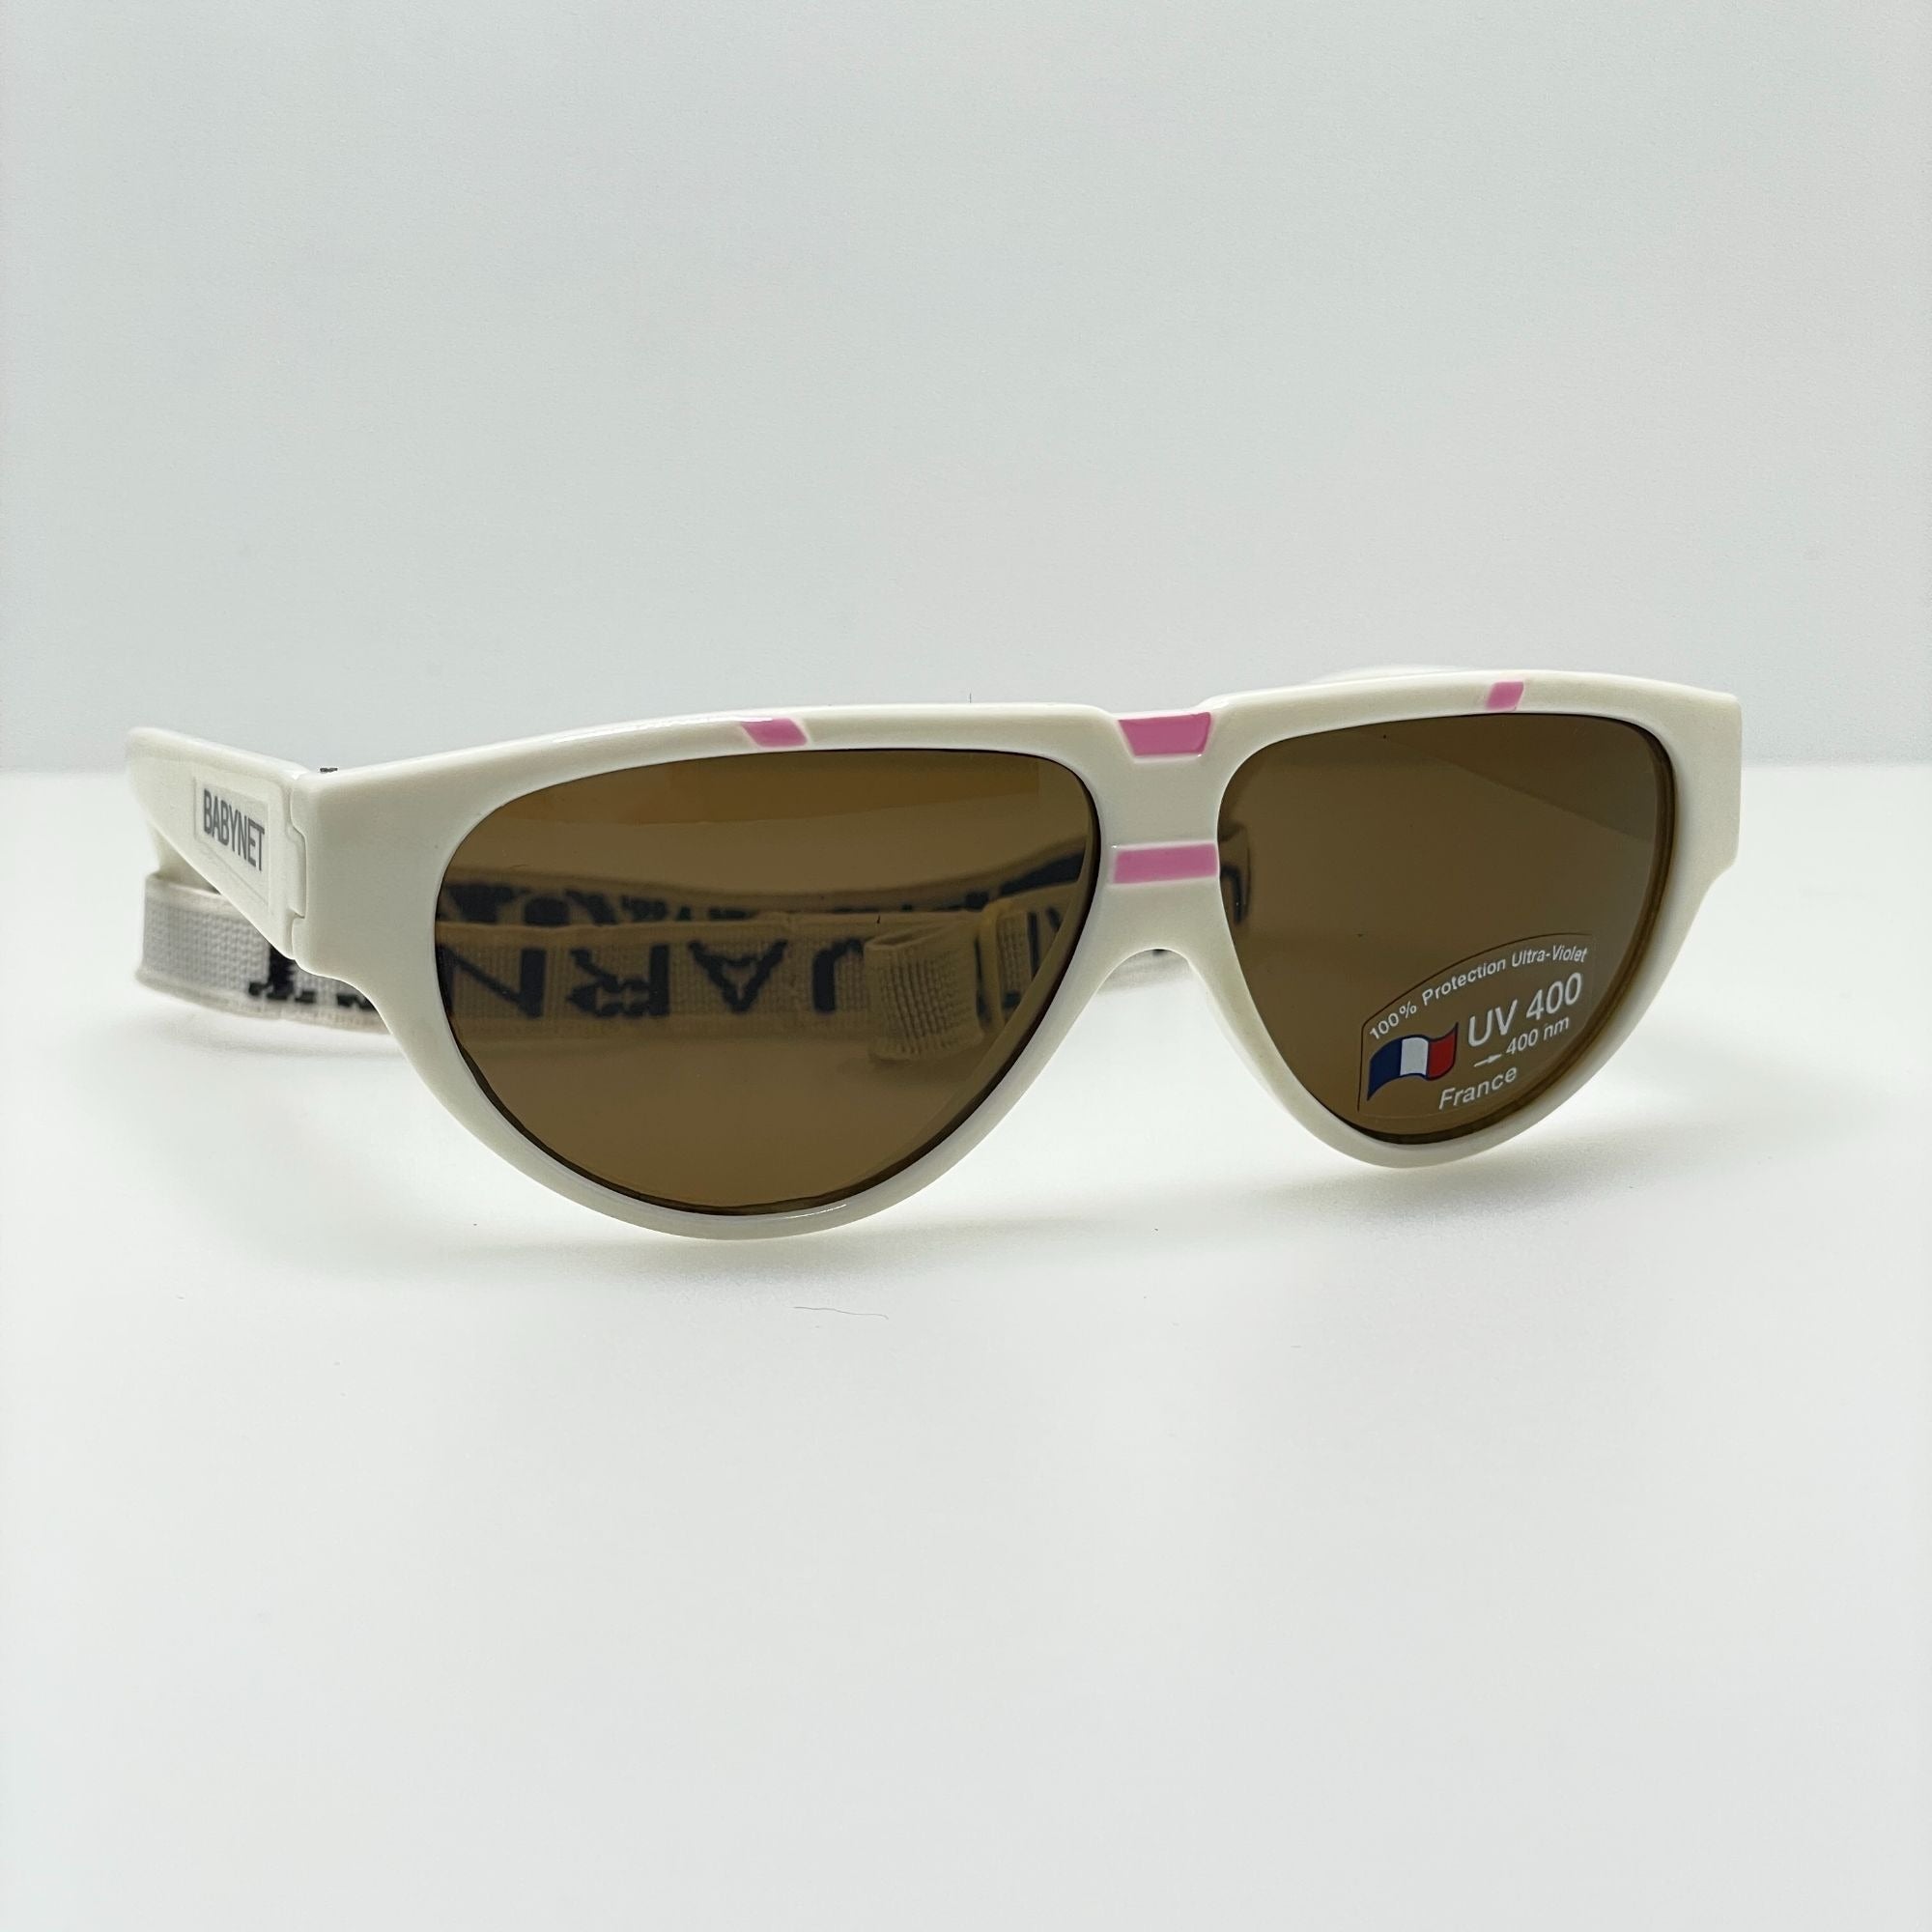 Vuarnet-Sunglasses-Babynet-Pouilloux-Paris-France-Vintage-White-Sunglasses